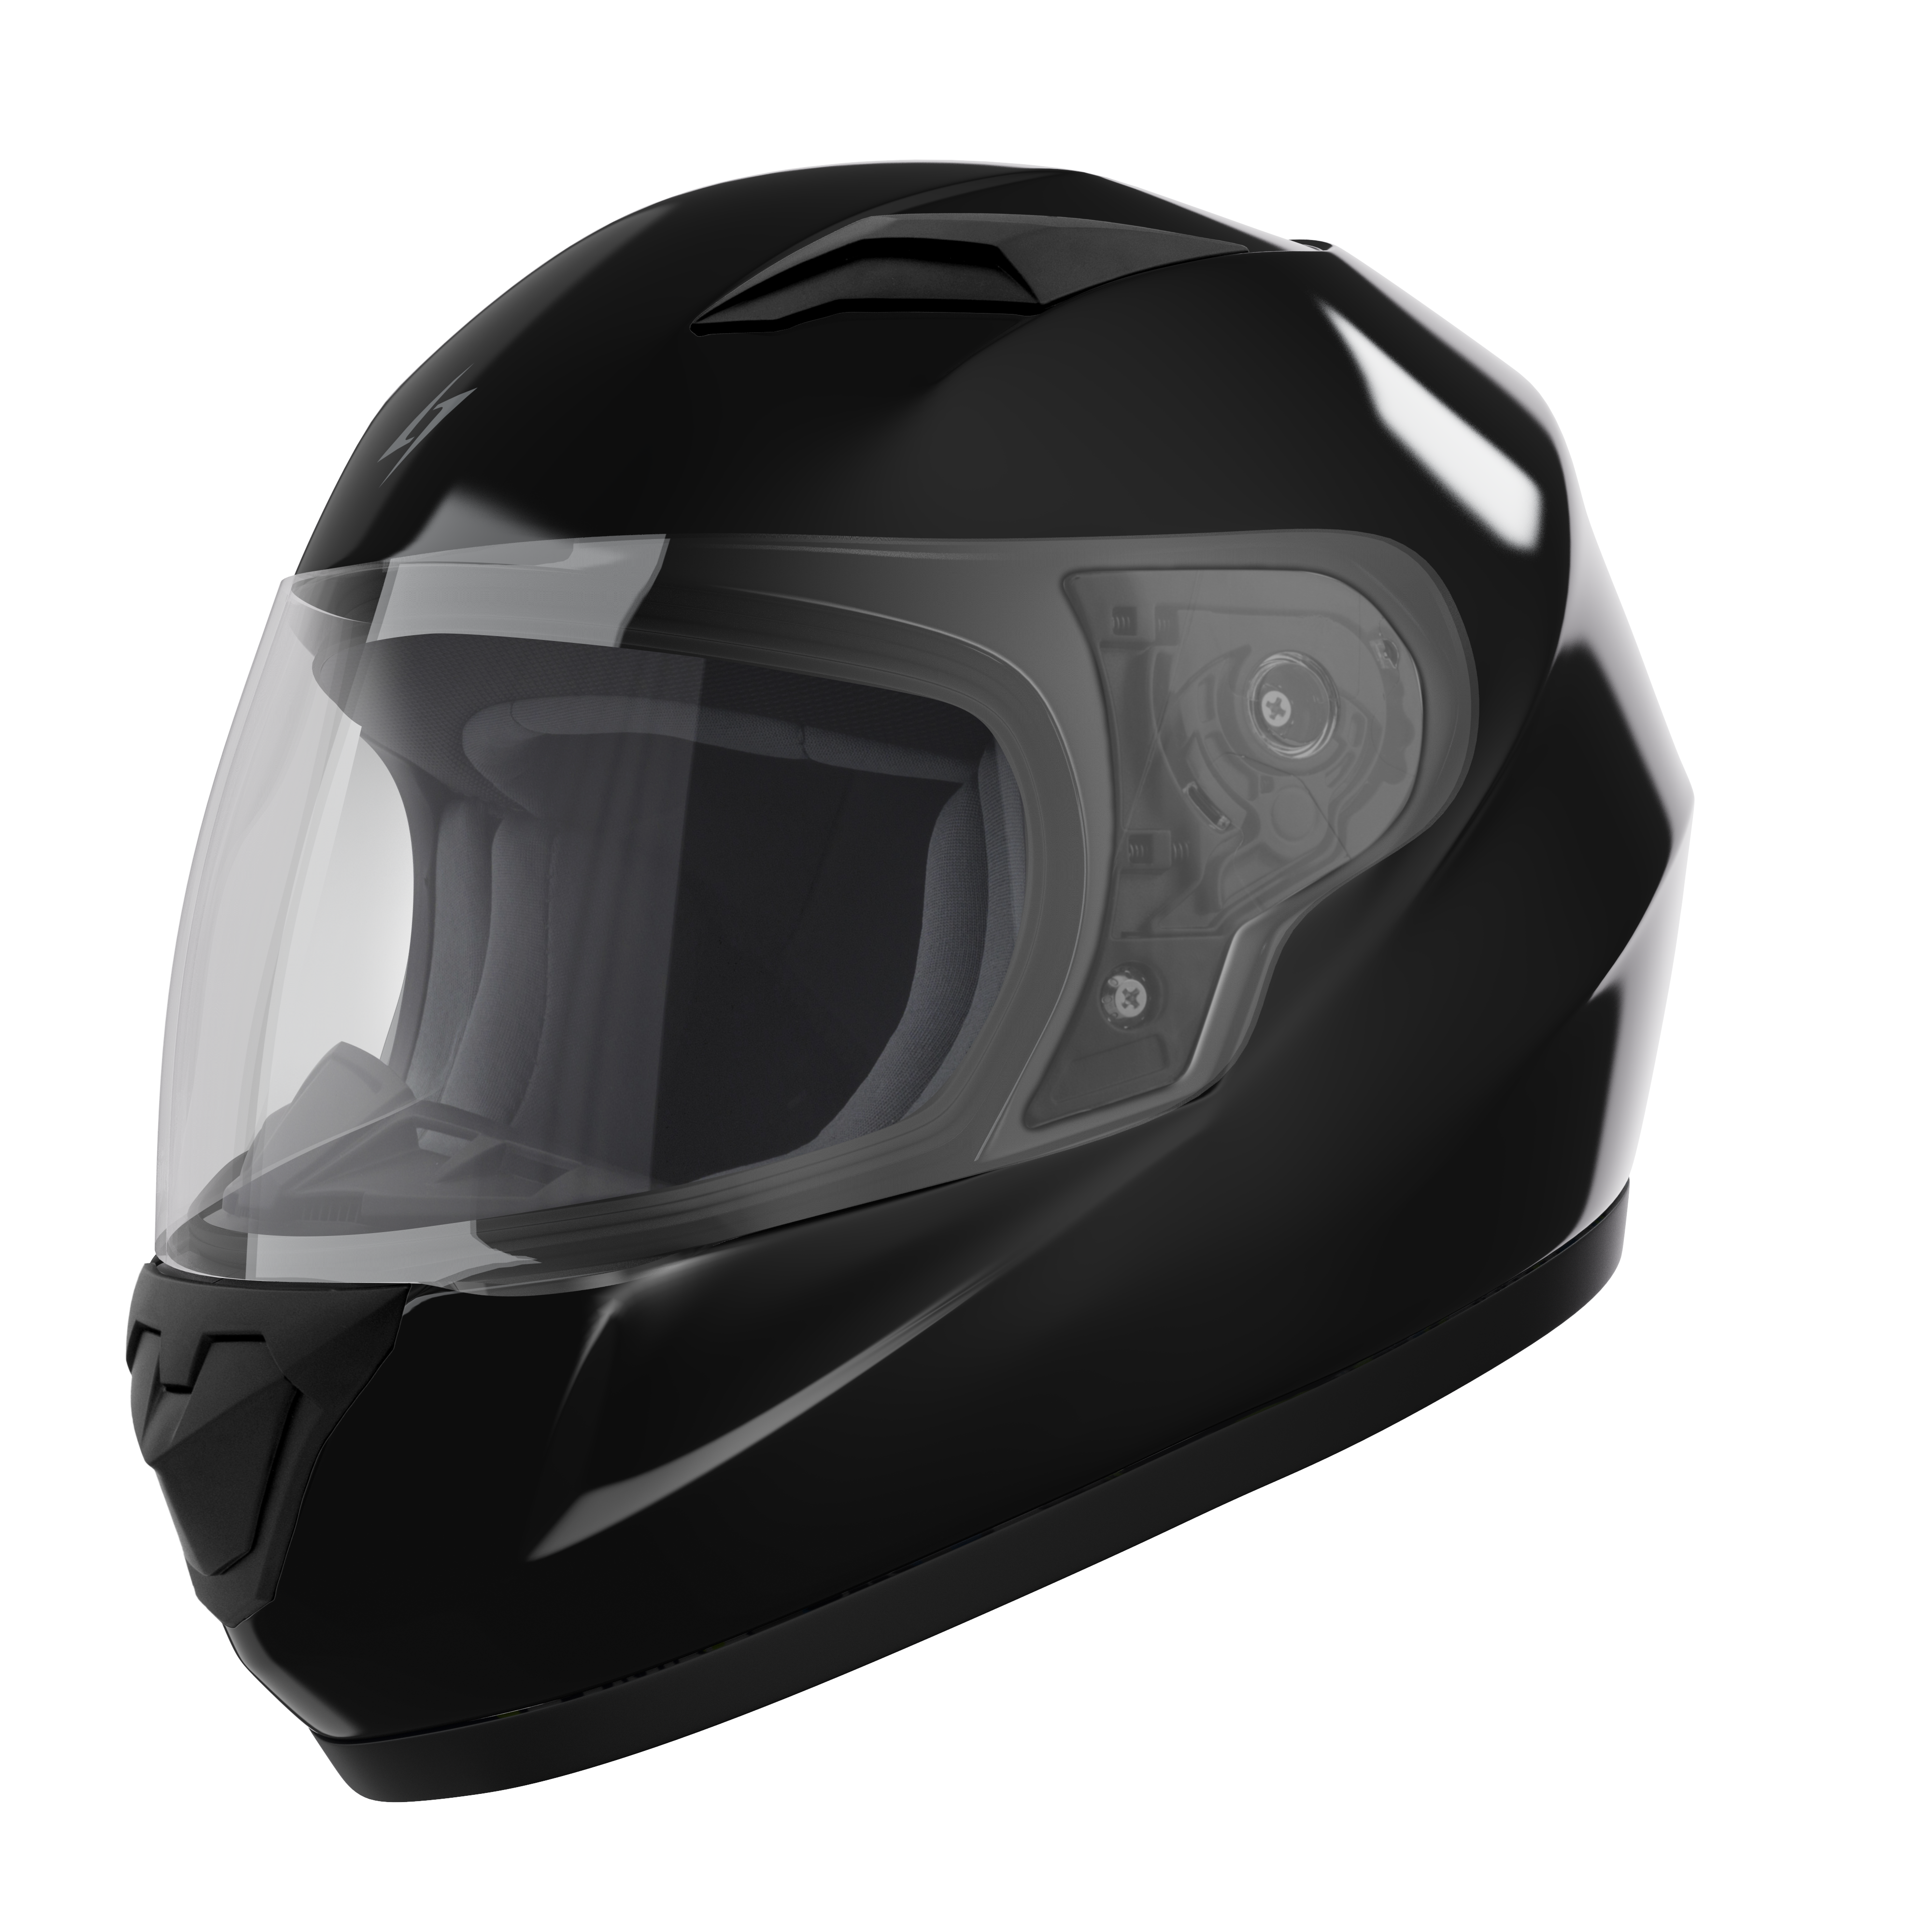 Rule kid  Stormer : Motorcycle helmets, gear and accessories